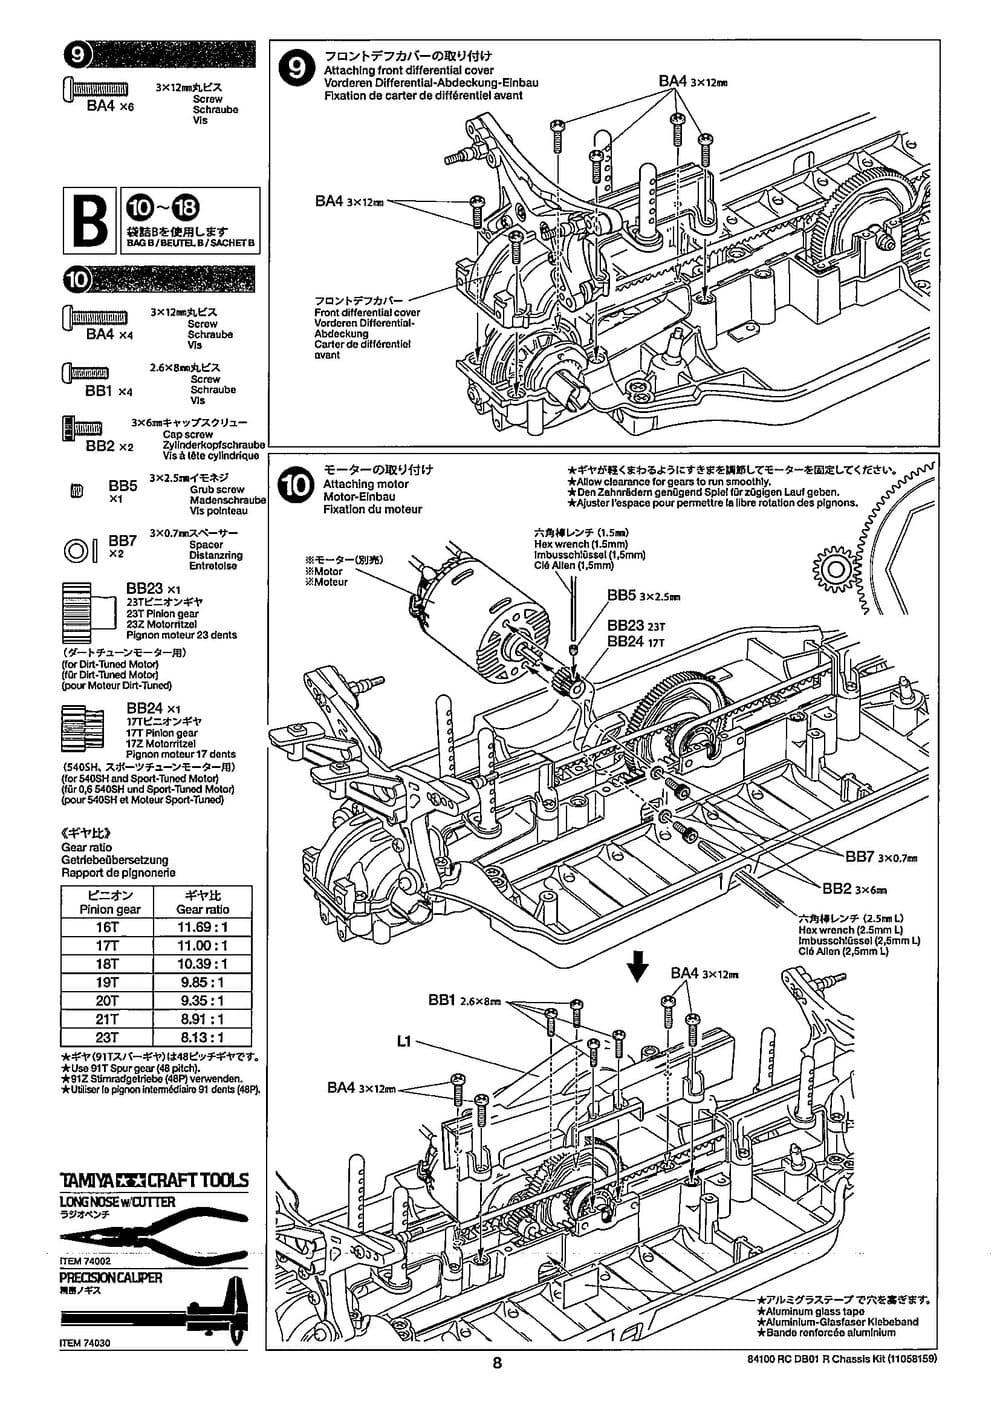 Tamiya - DB-01R Chassis - Manual - Page 8